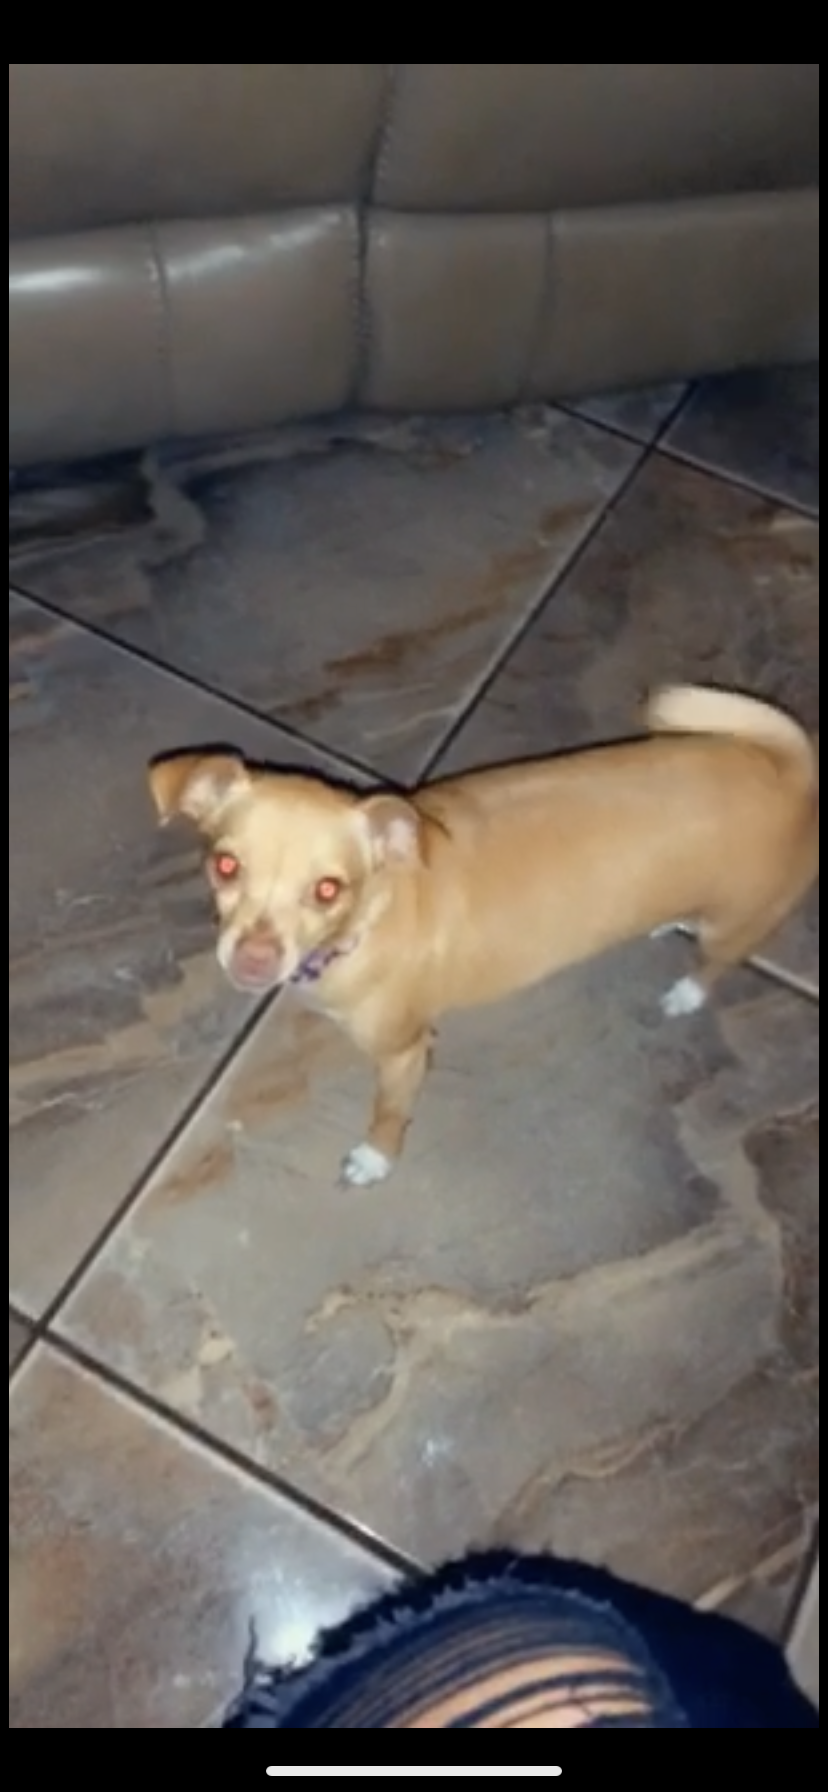 Image of Nina, Lost Dog